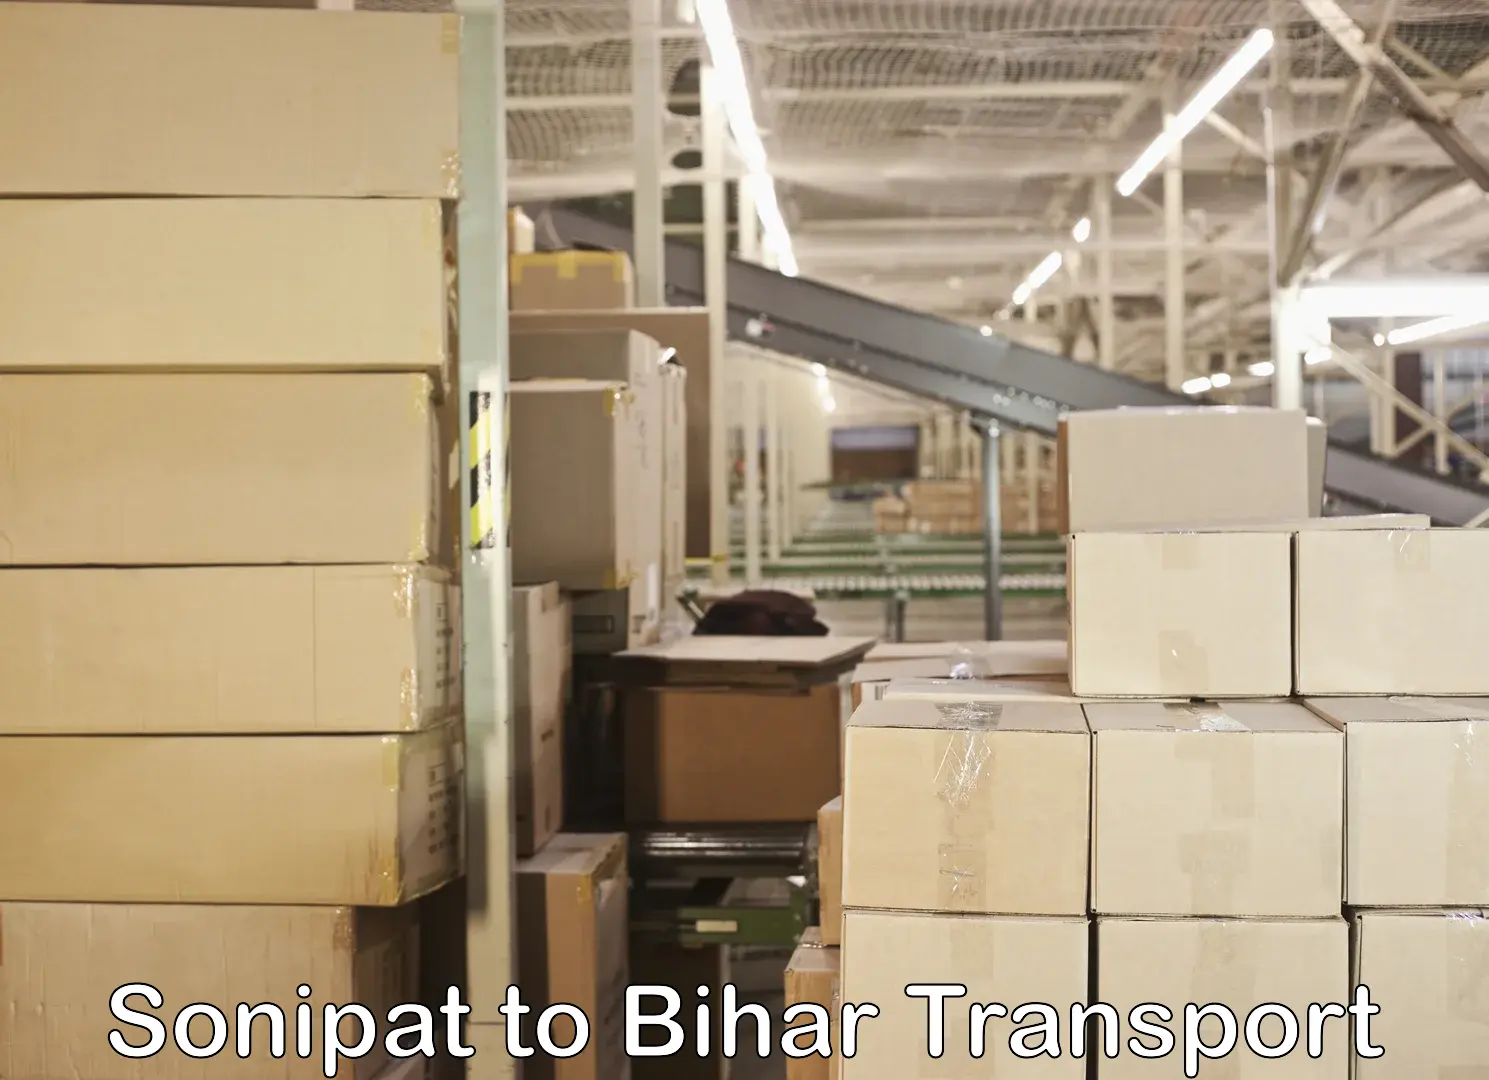 Furniture transport service Sonipat to Gaya